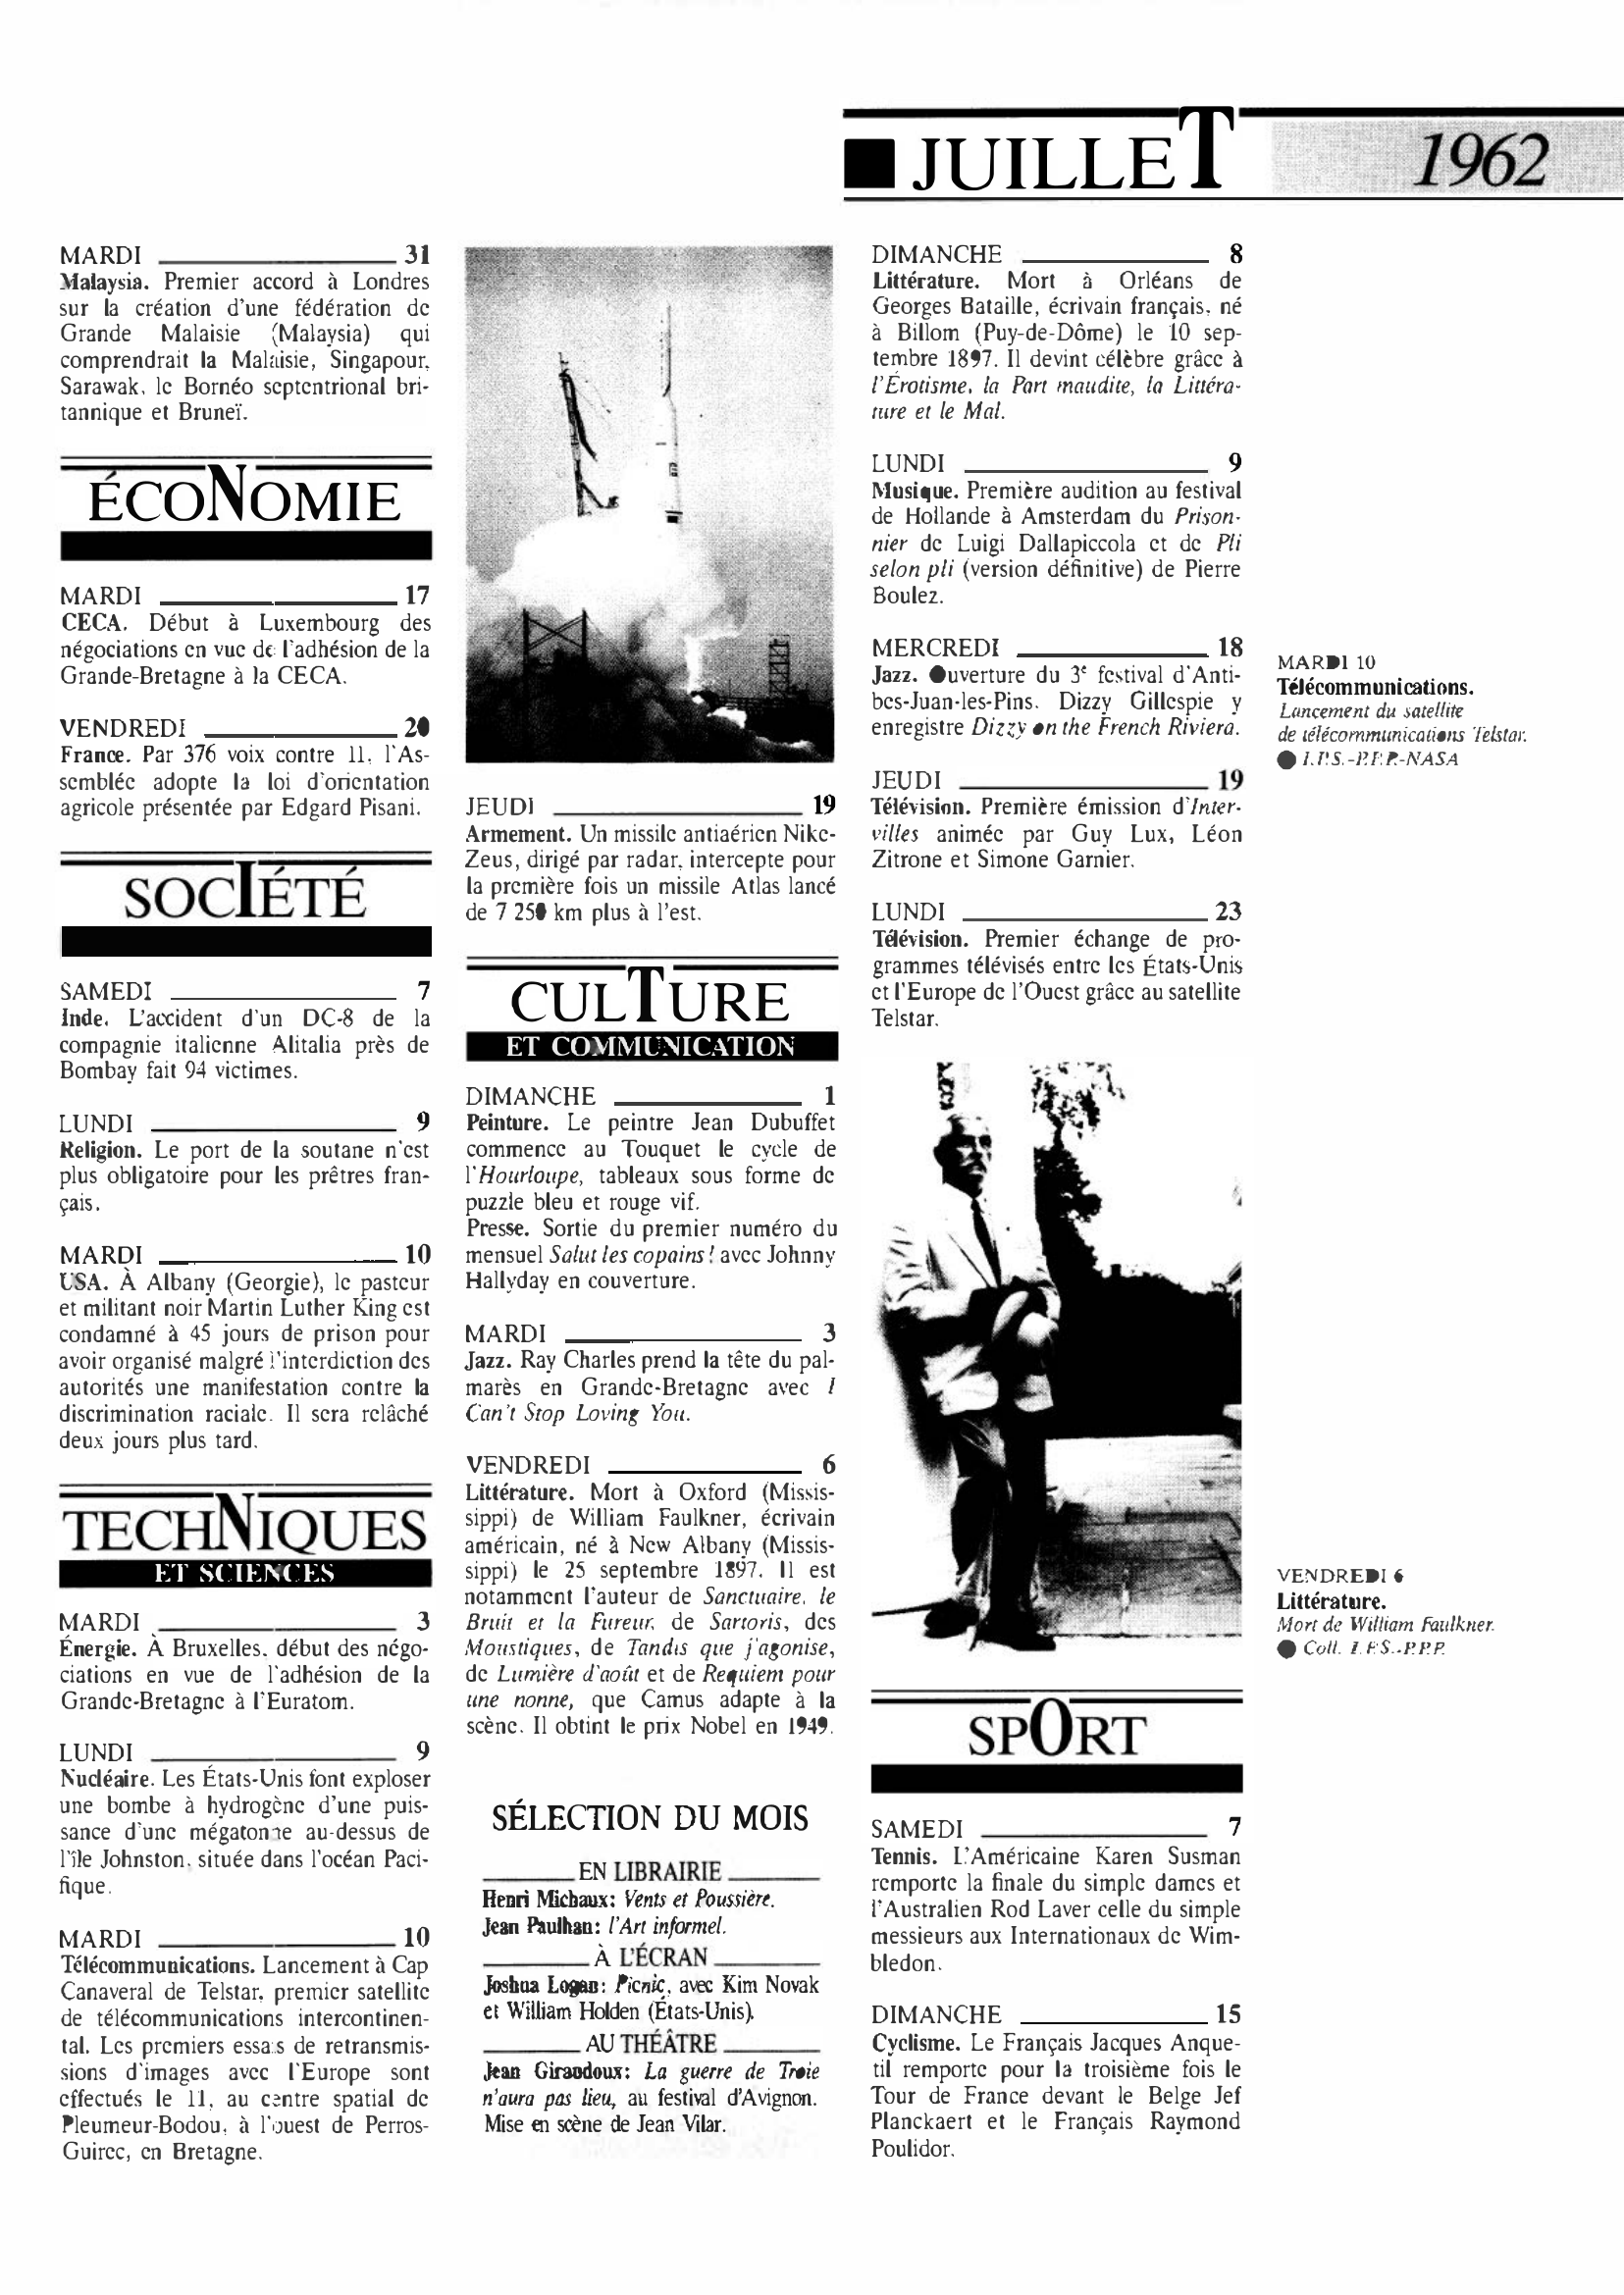 Prévisualisation du document 1962 Juillet dans le monde (histoire chronologique)